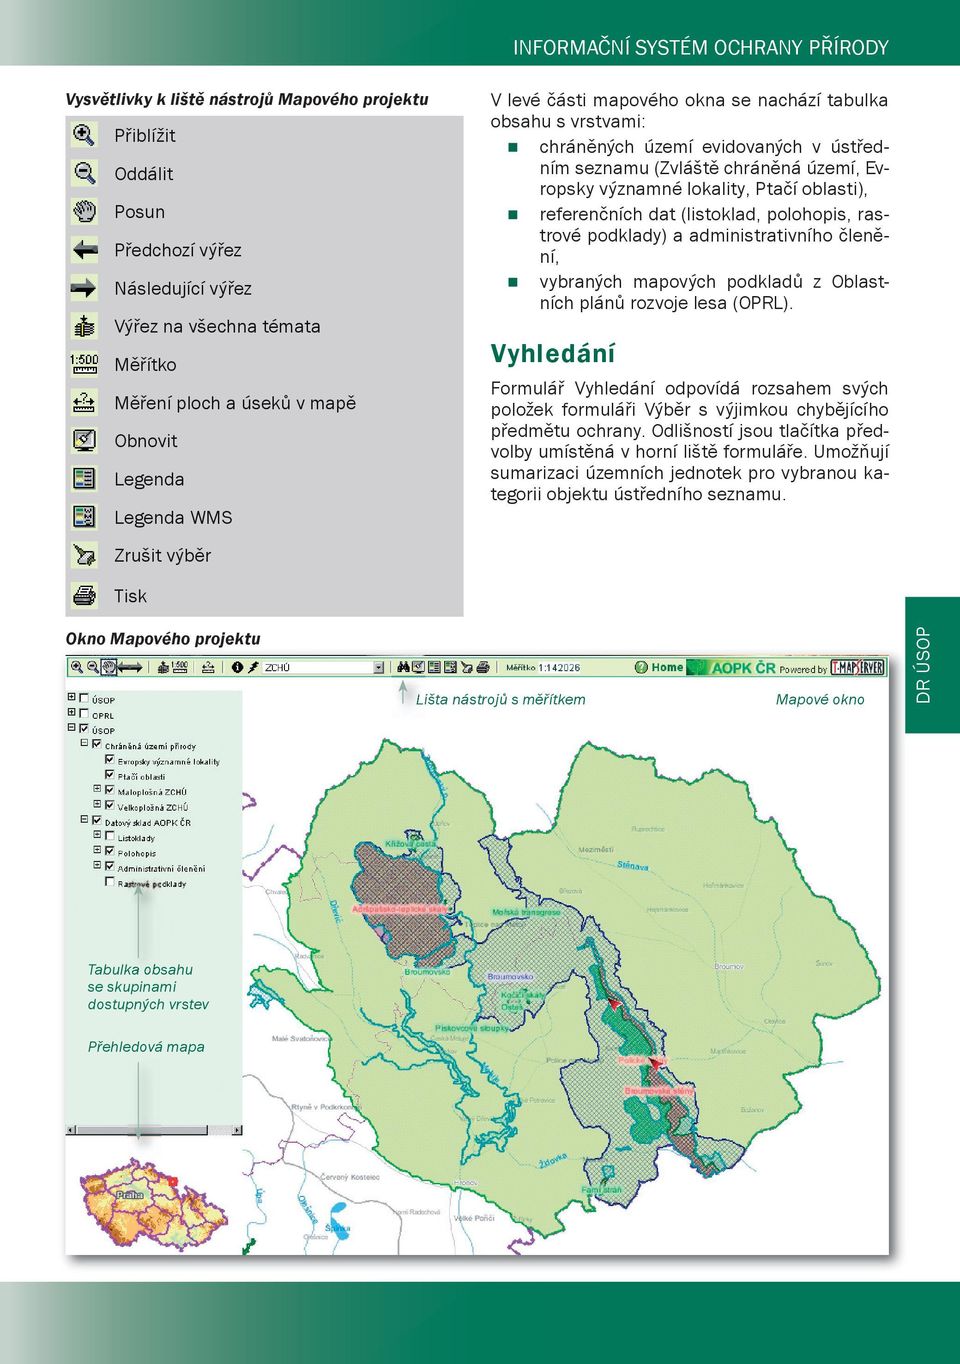 Ptačí oblasti), referenčních dat (listoklad, polohopis, rastrové podklady) a administrativního členění, vybraných mapových podkladů z Oblastních plánů rozvoje lesa (OPRL).